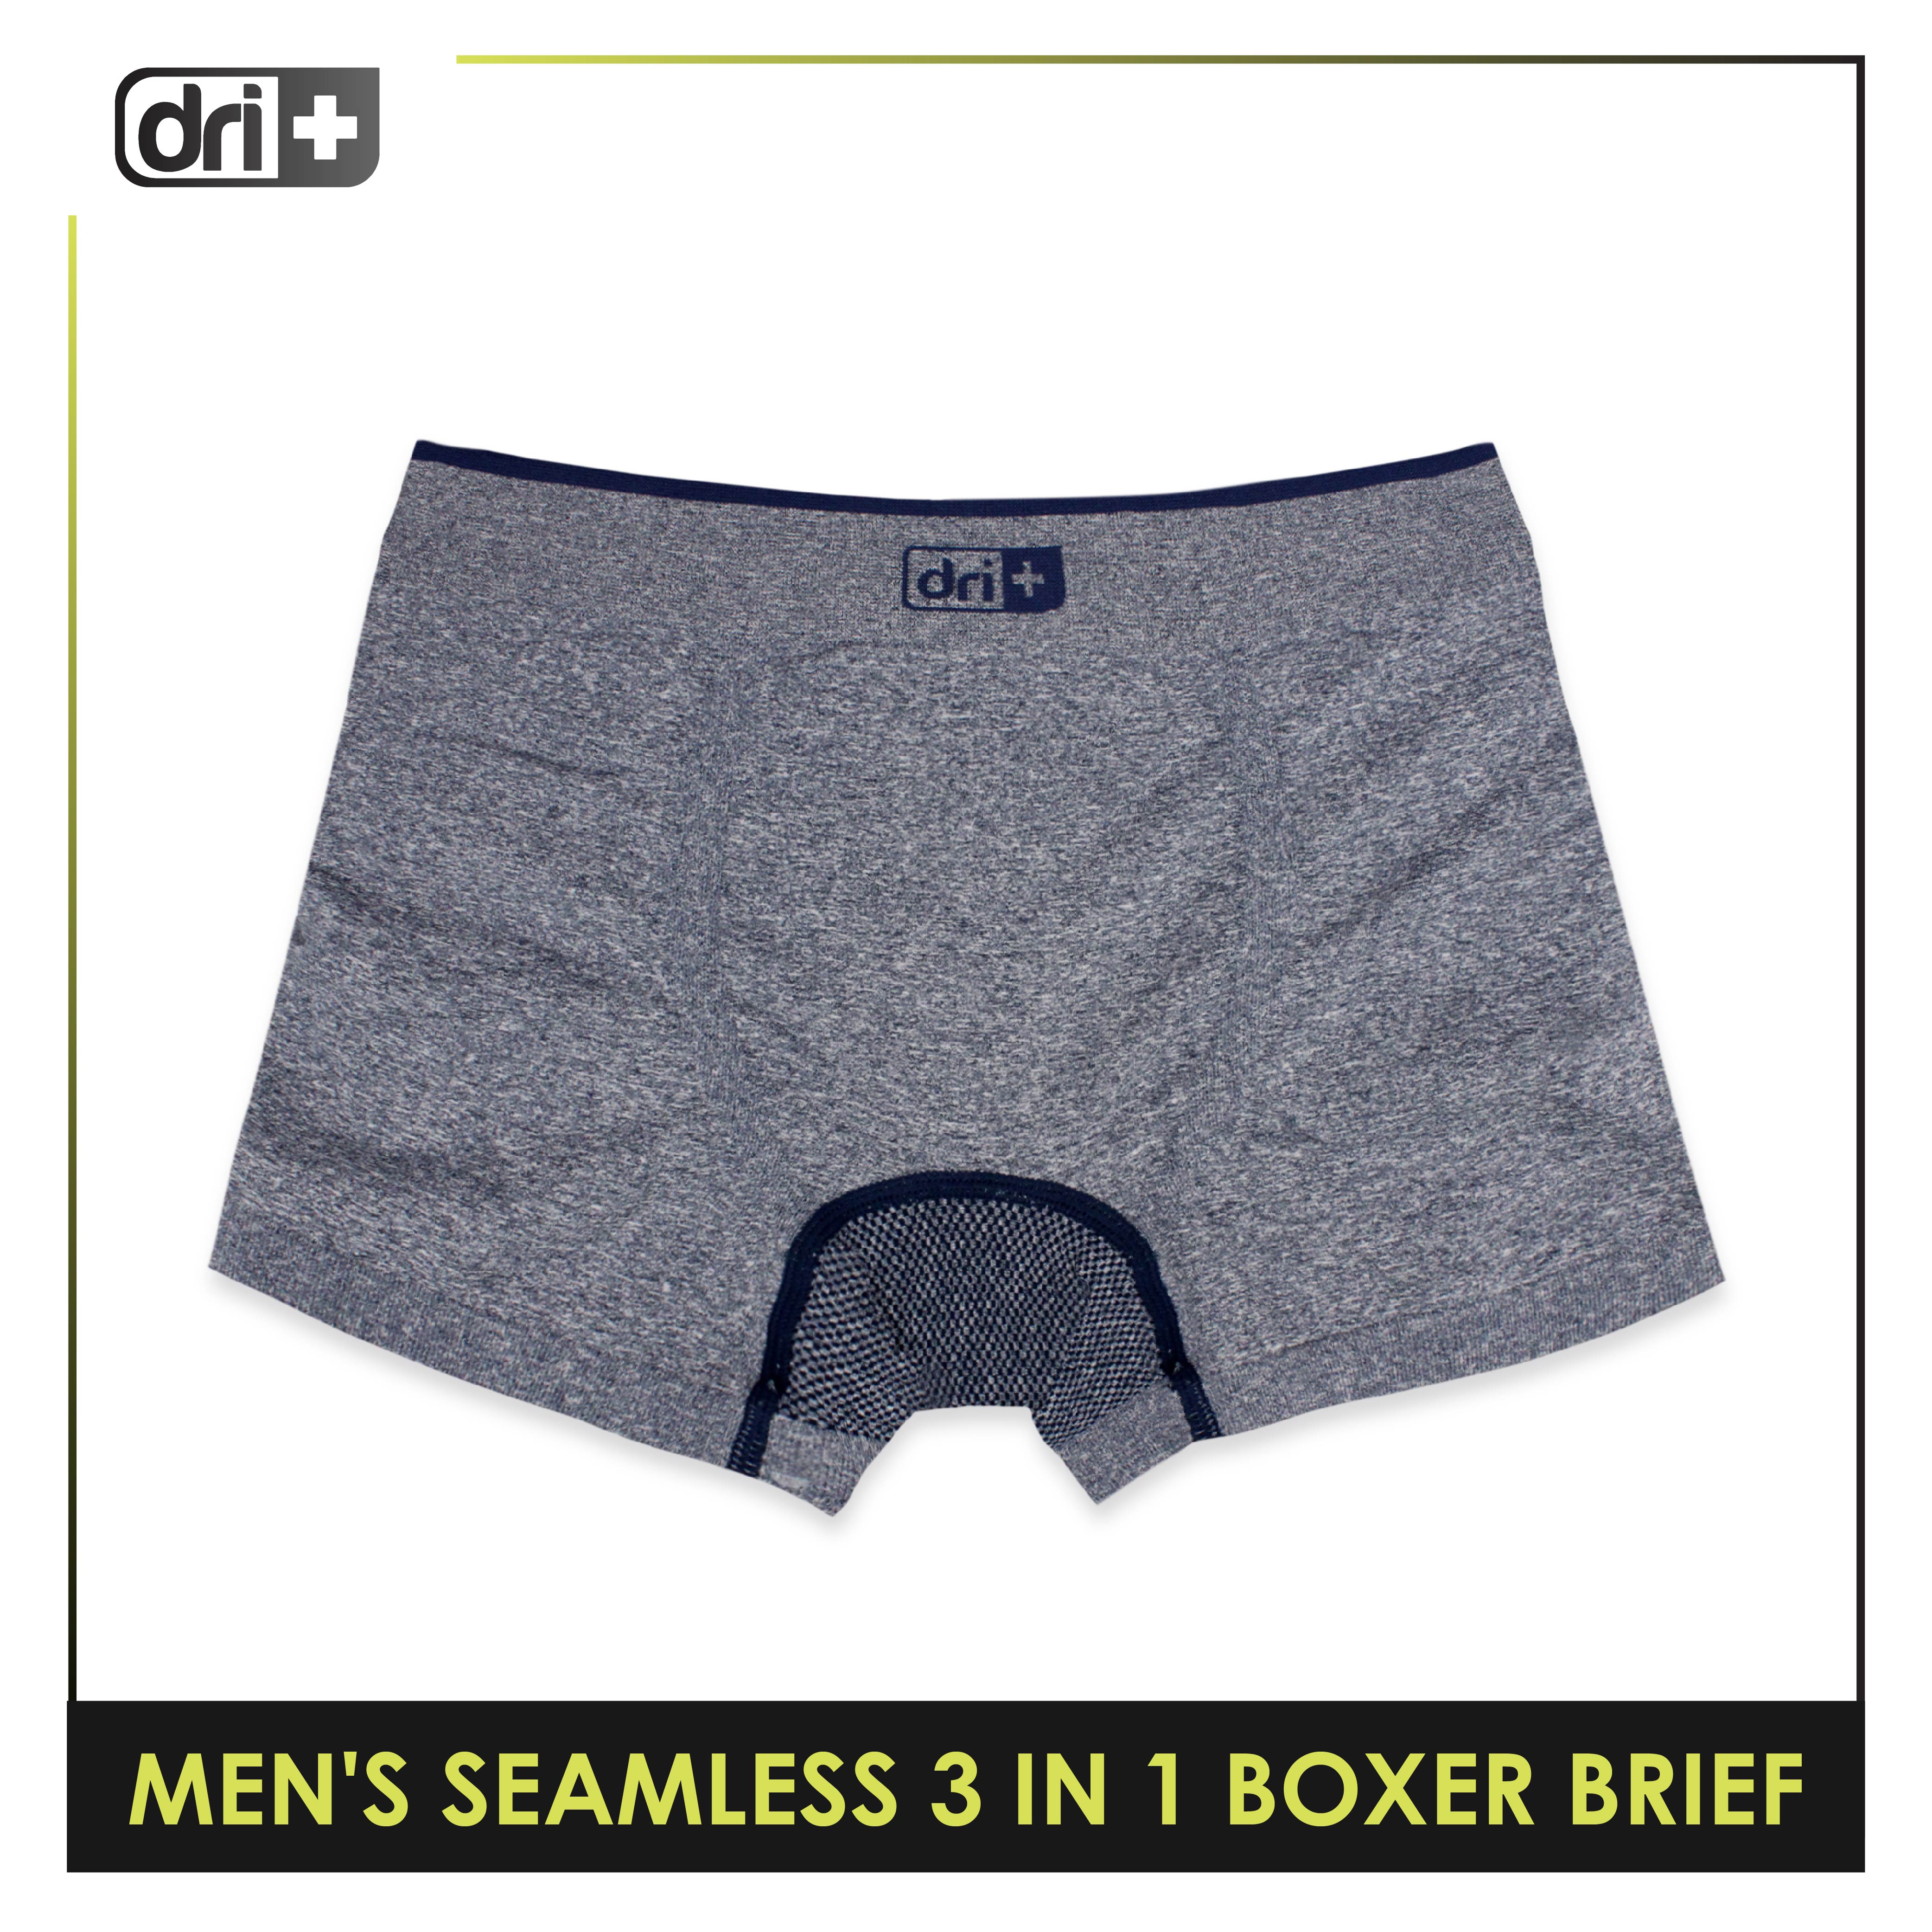 optioneel Vaardigheid borduurwerk Dri Plus Men's Seamless Sports Boxers Brief 3 pieces in a pack ODMBBG1101 –  burlingtonph